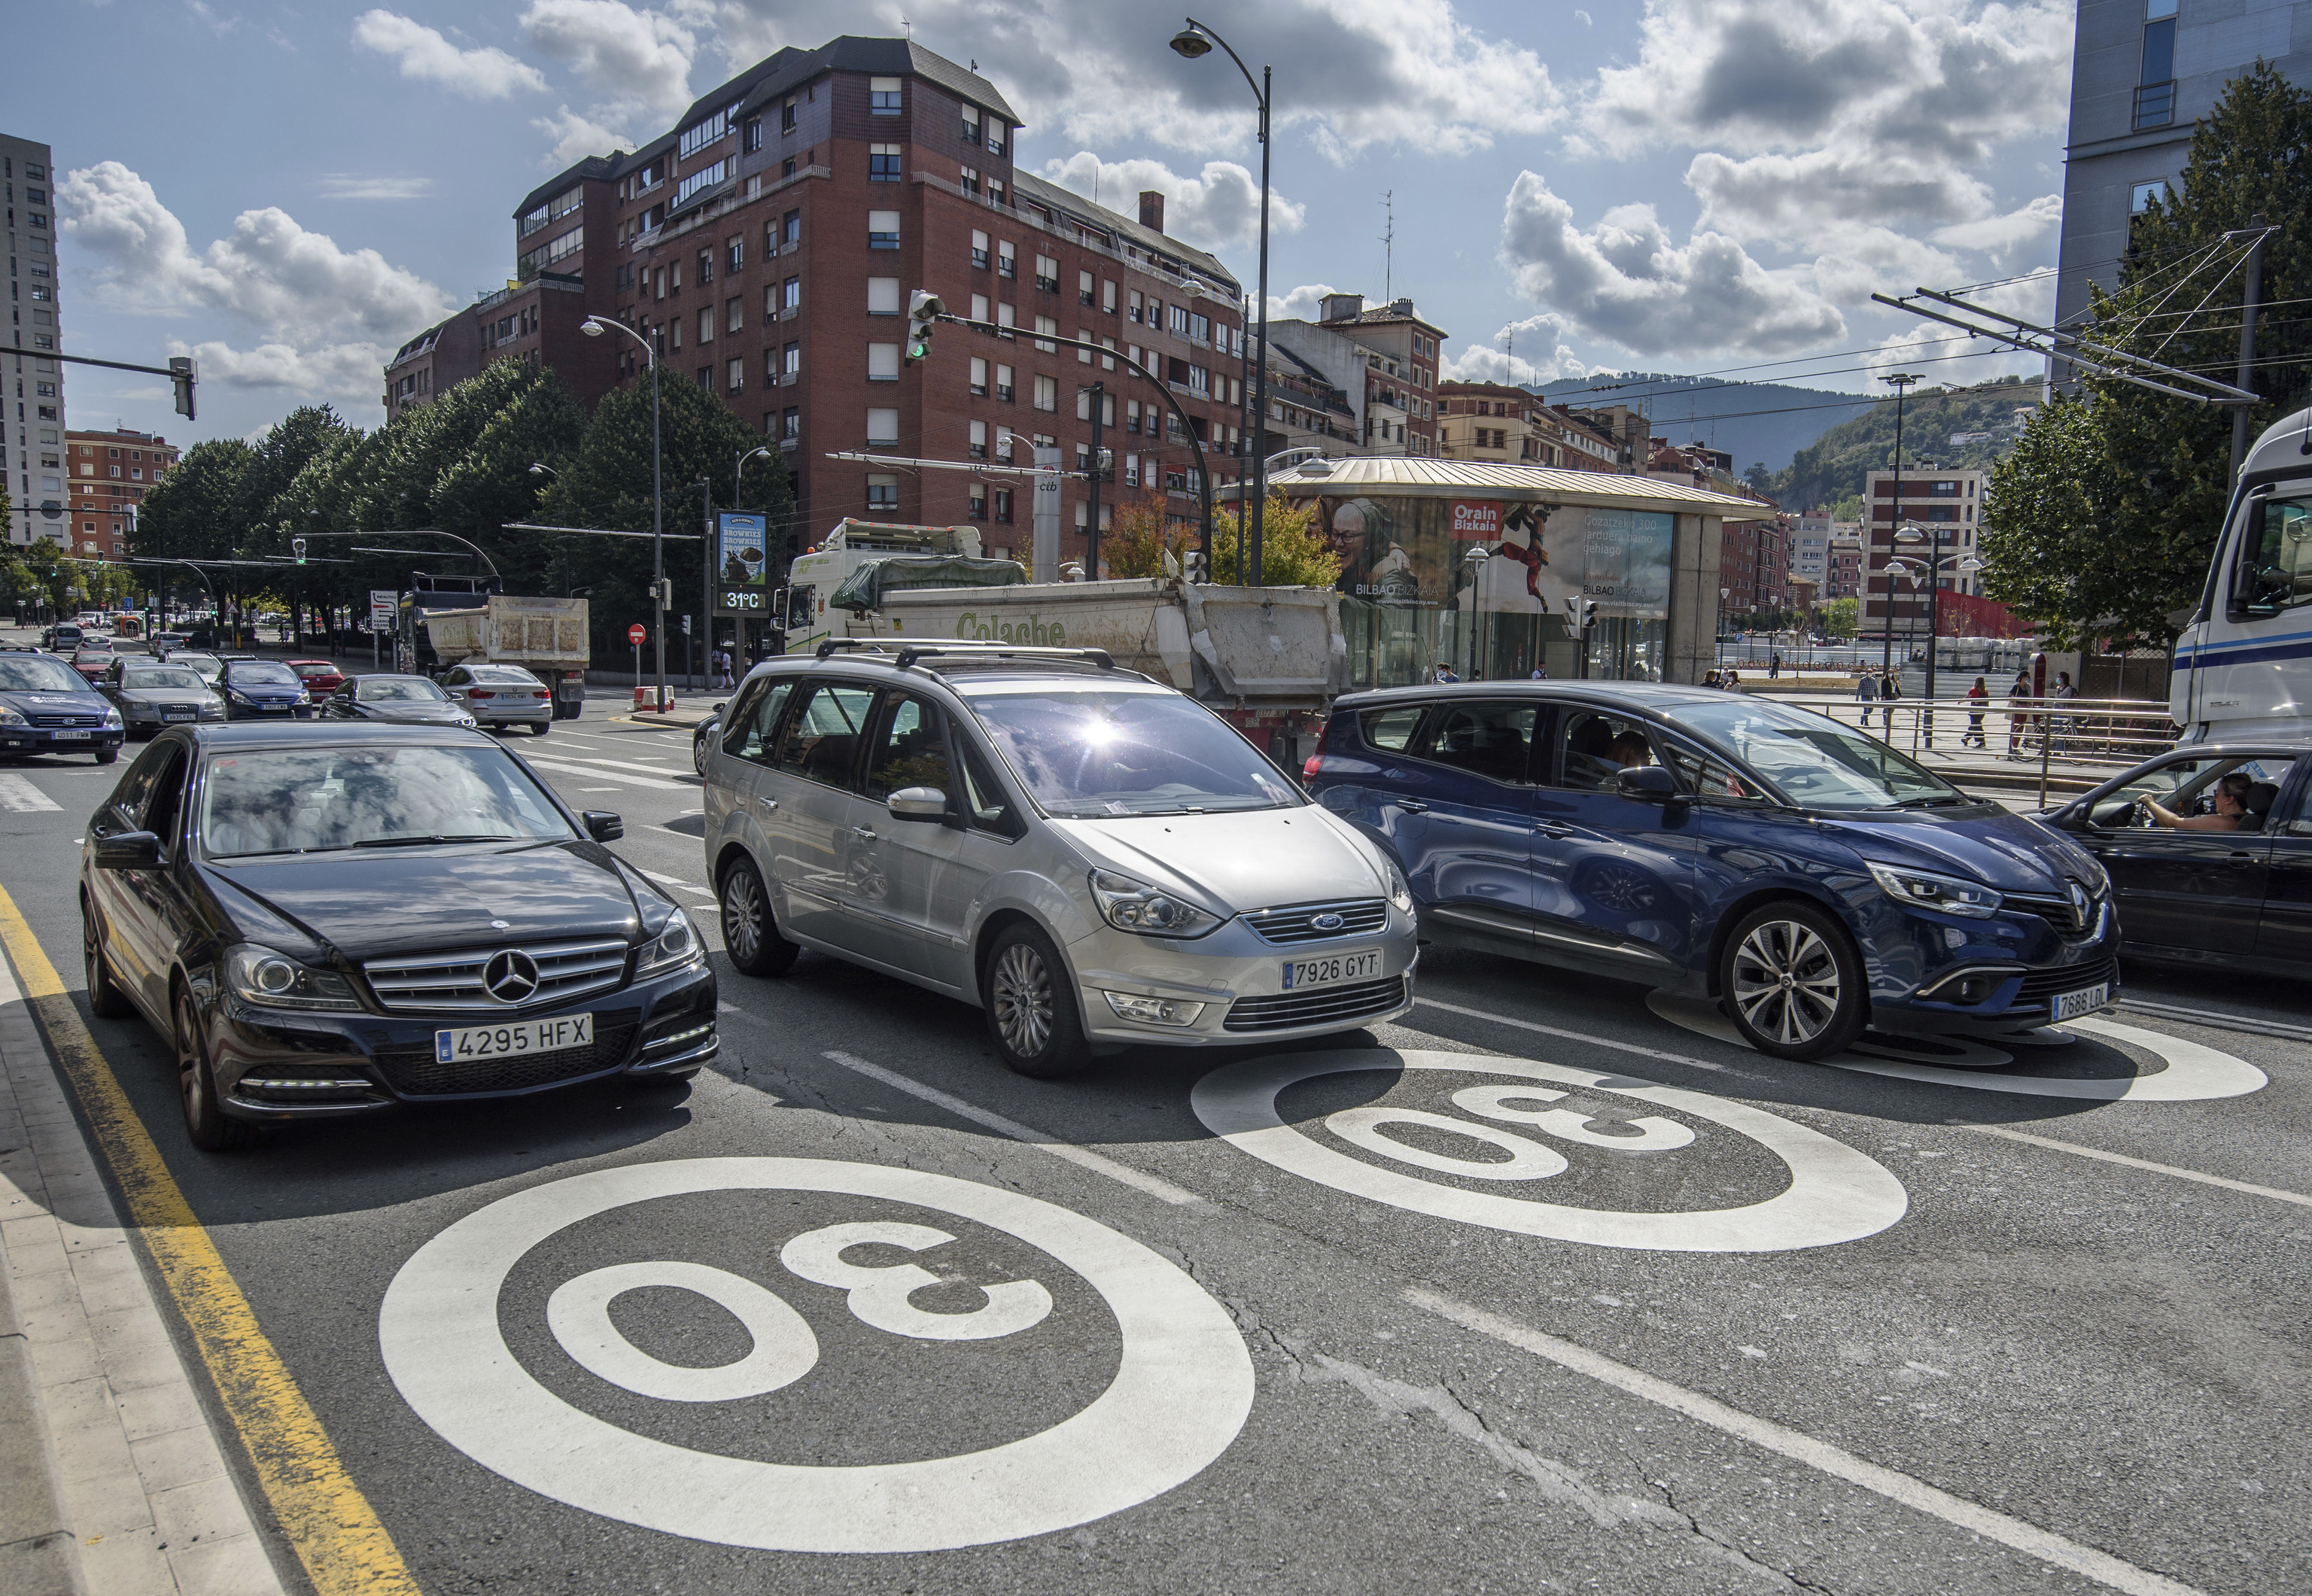 Bilbao fue la primera ciudad espaola en generalizar los 30 km/h en sus calles